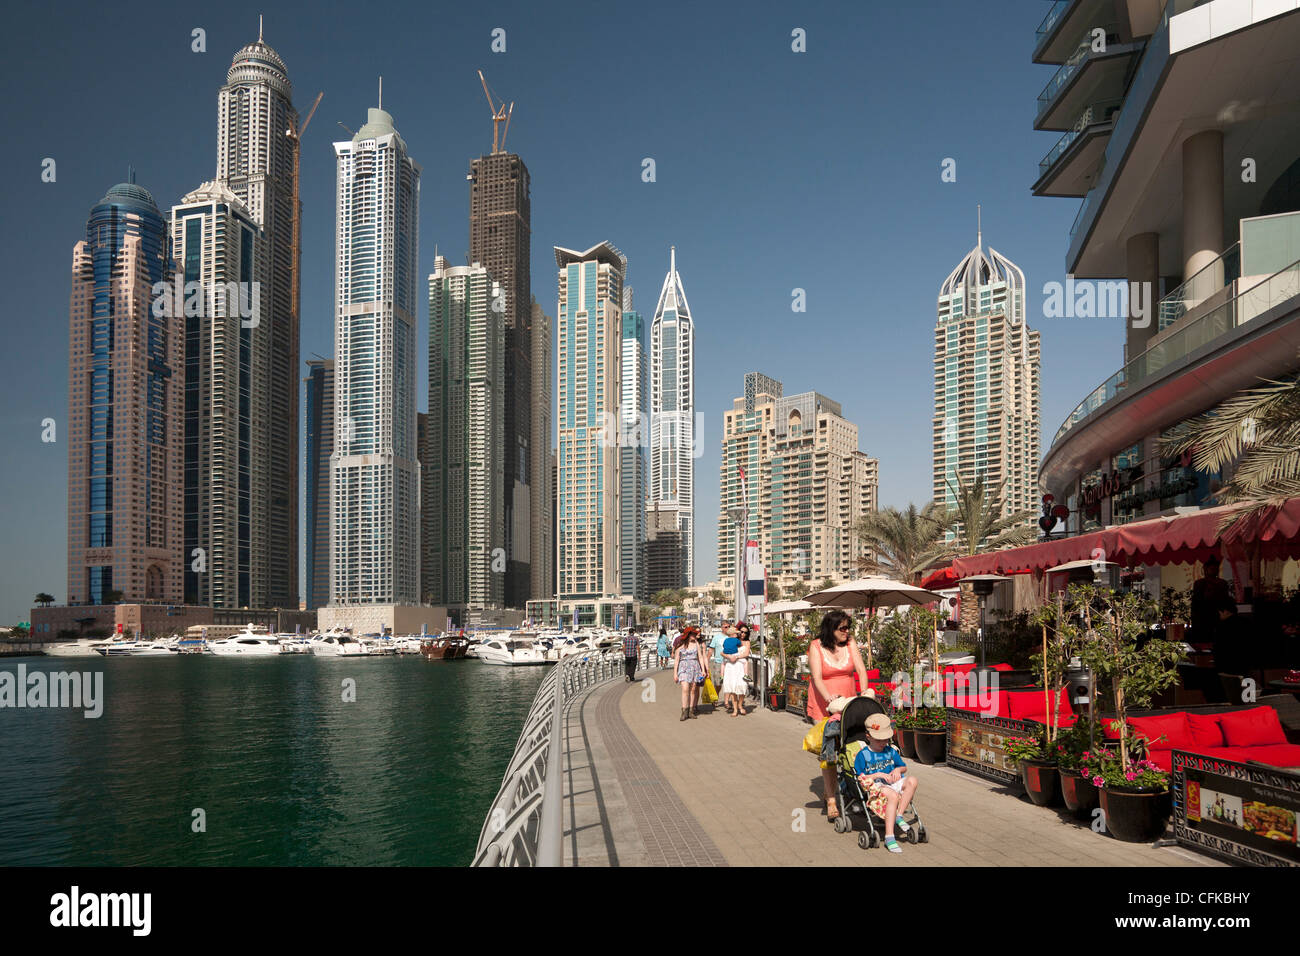 Die Wolkenkratzer des Bereichs "Dubai Marina" (Dubai - Vereinigte Arabische Emirate). Les Gratte-Ciel du quartier "Dubai Marina". Stockfoto